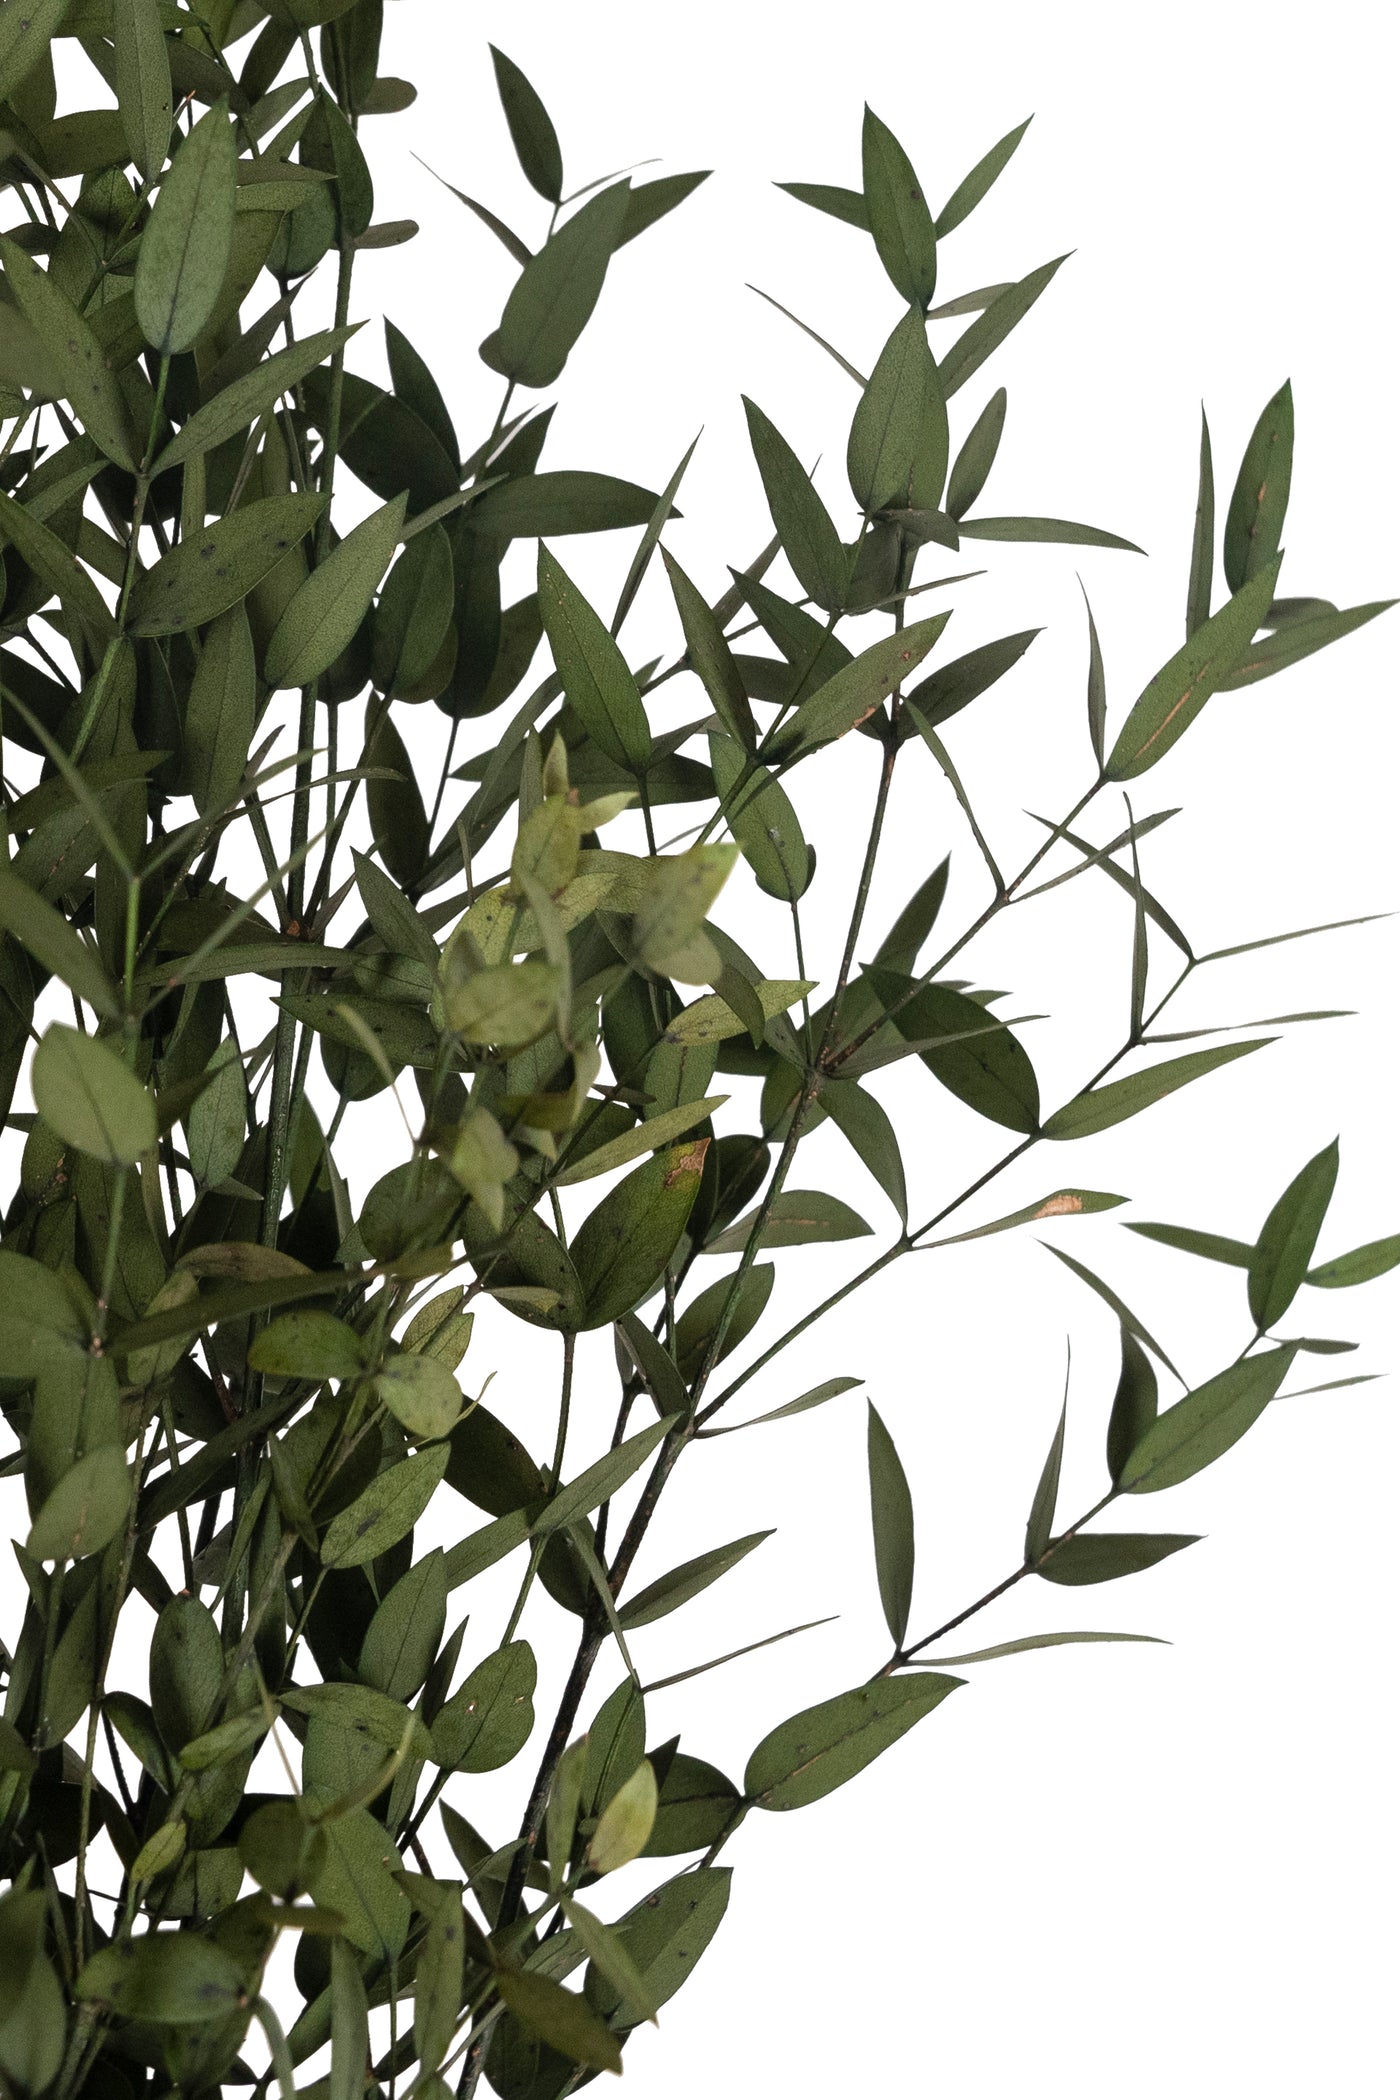 Crenguta conservata de Eucalipt parvifolia H60-70 cm. galbena